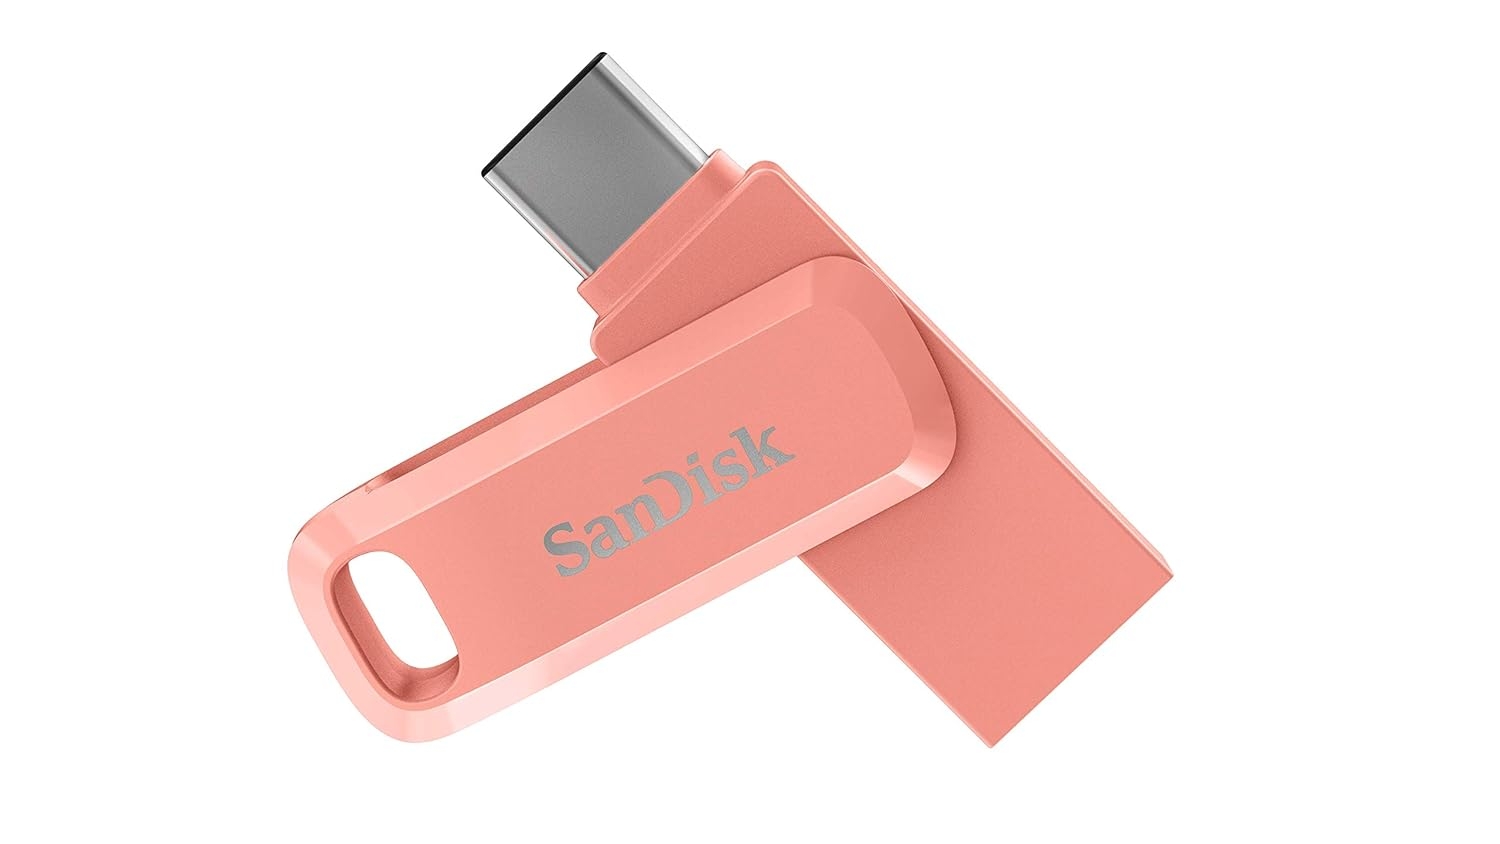 SanDisk Ultra Dual Drive Go USB 3.0 Flash Drive, Peach, 512GB, 5Y